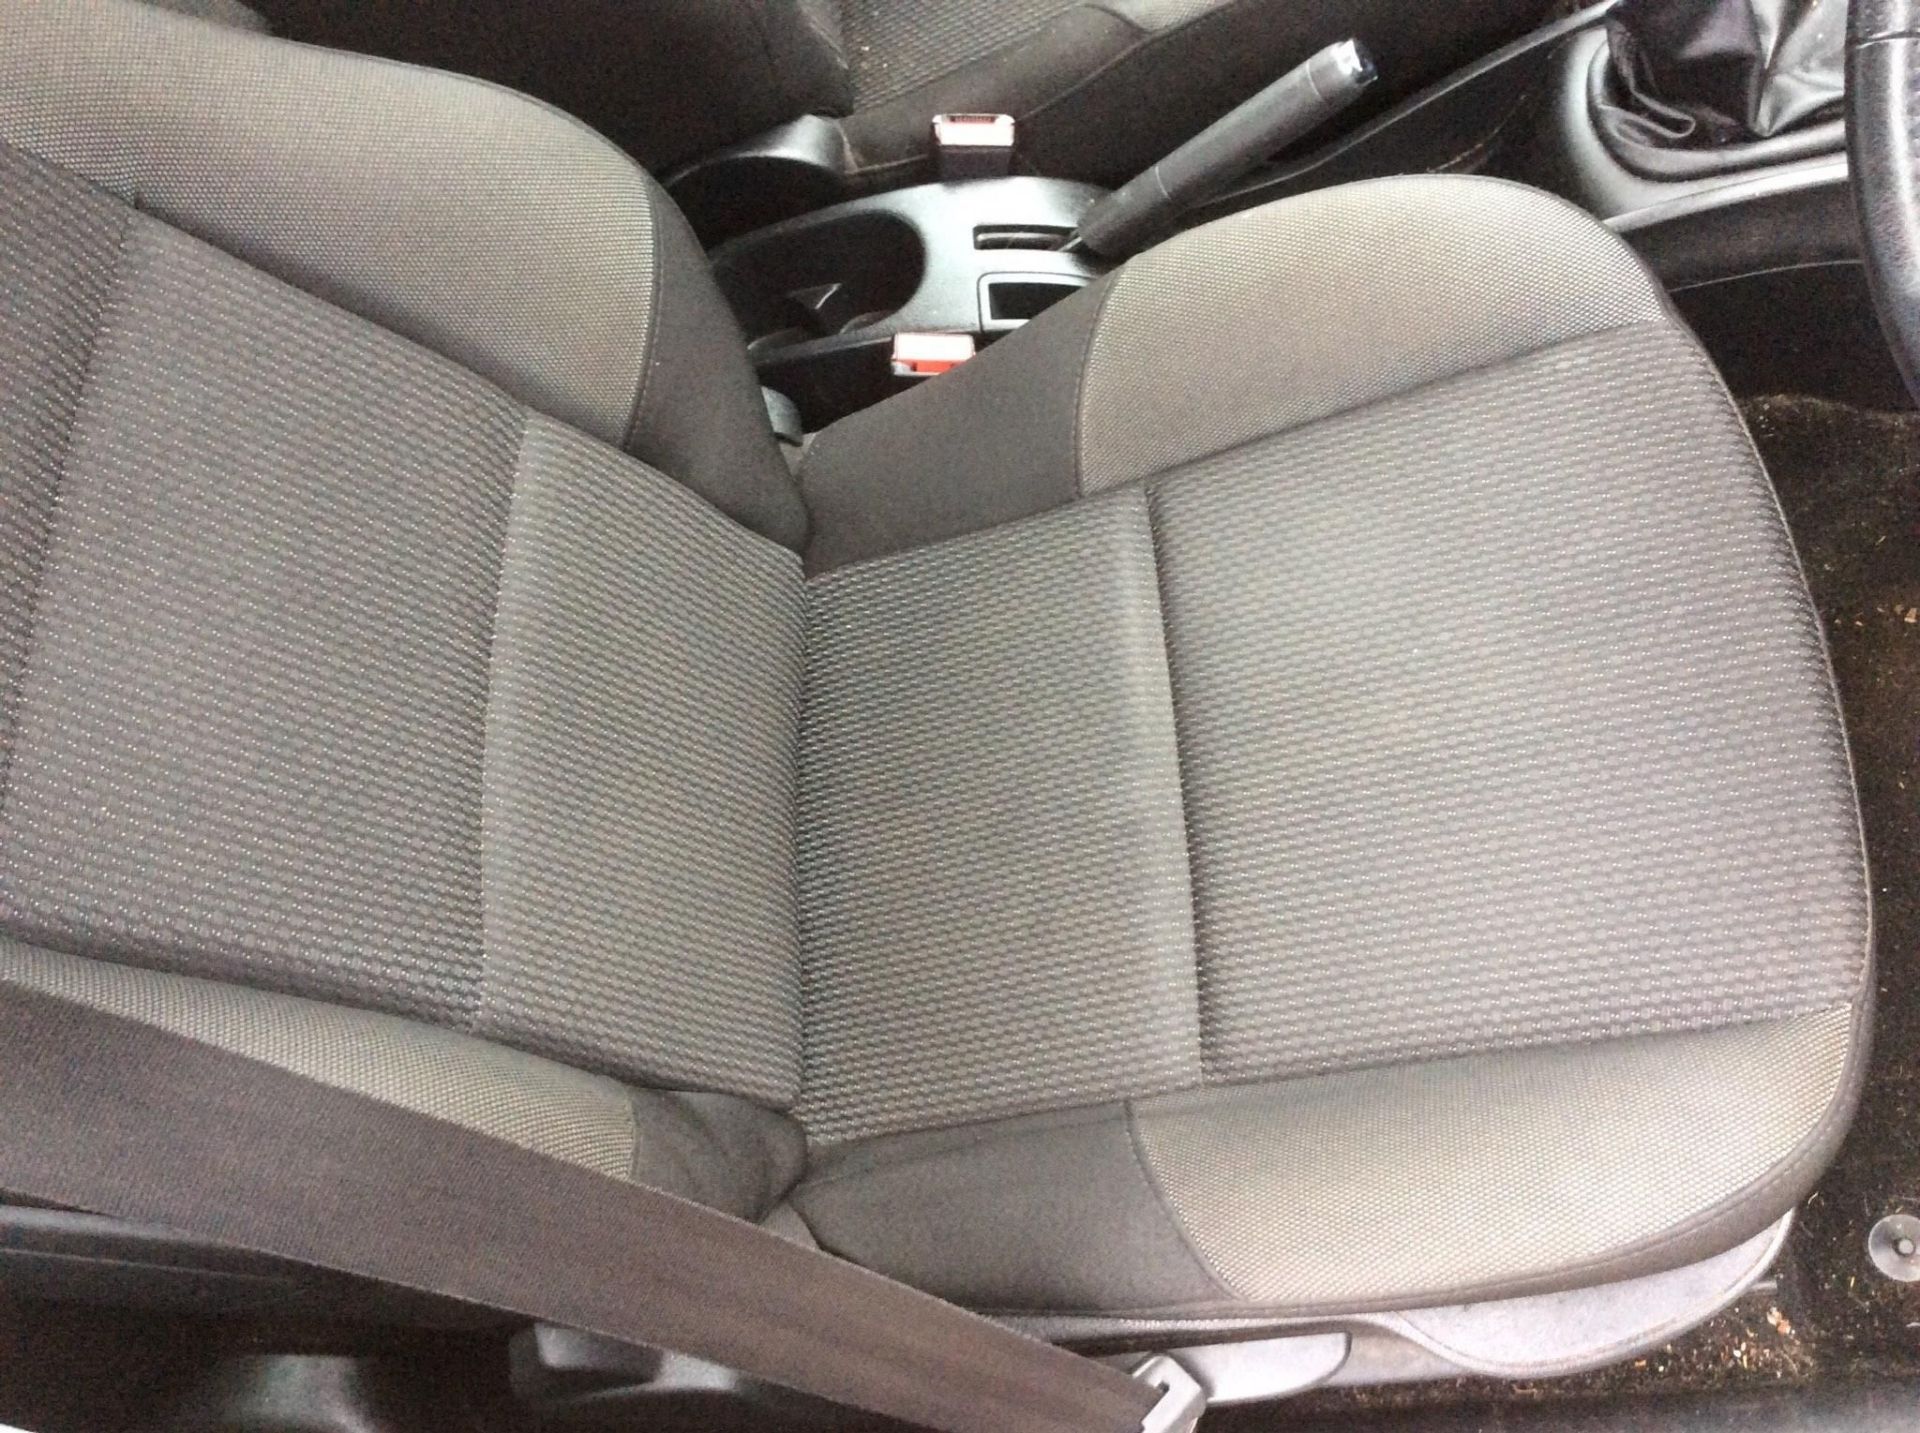 2012 Peugeot 207 1.4 Active 5 Door Hatchback - Image 15 of 16